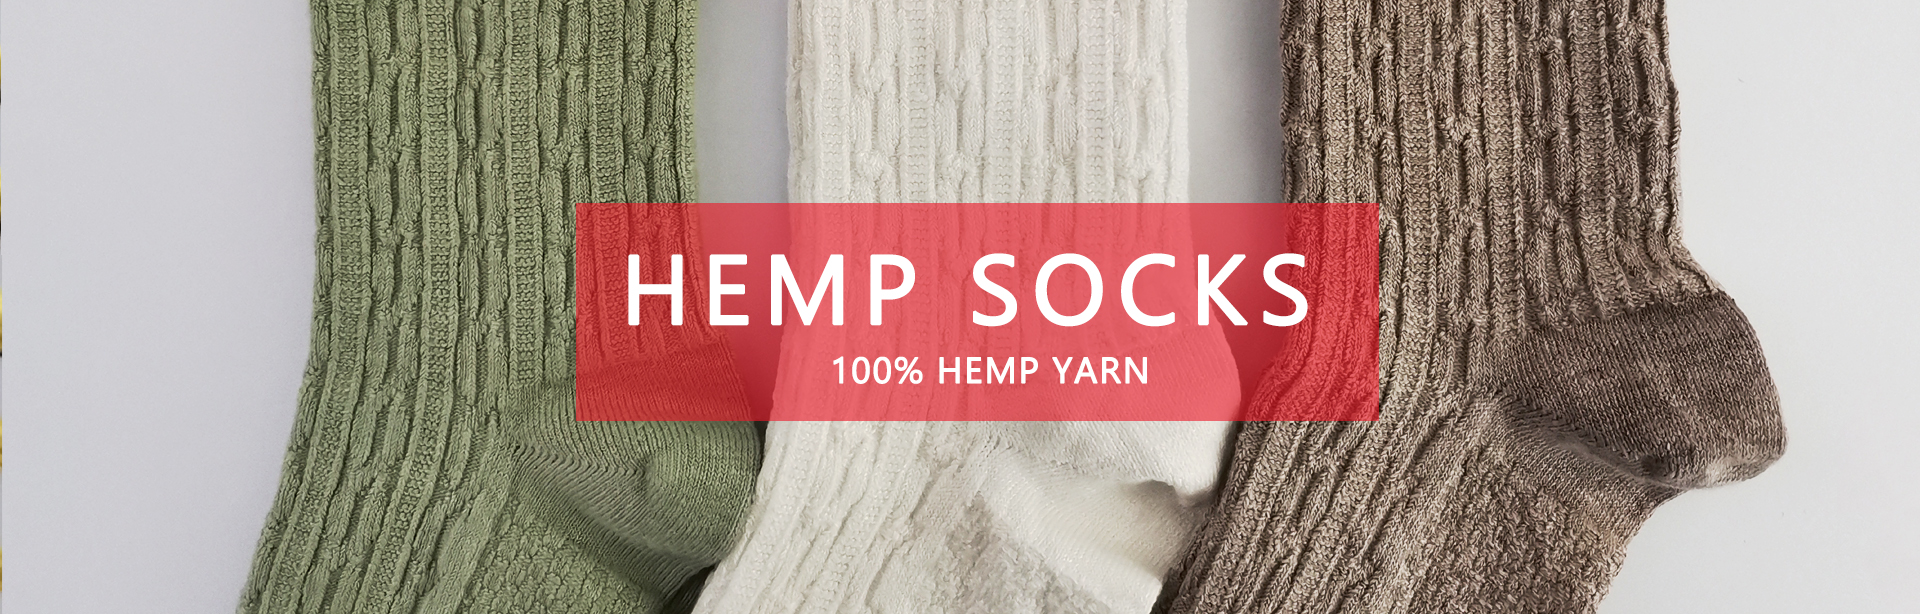 hemp socks